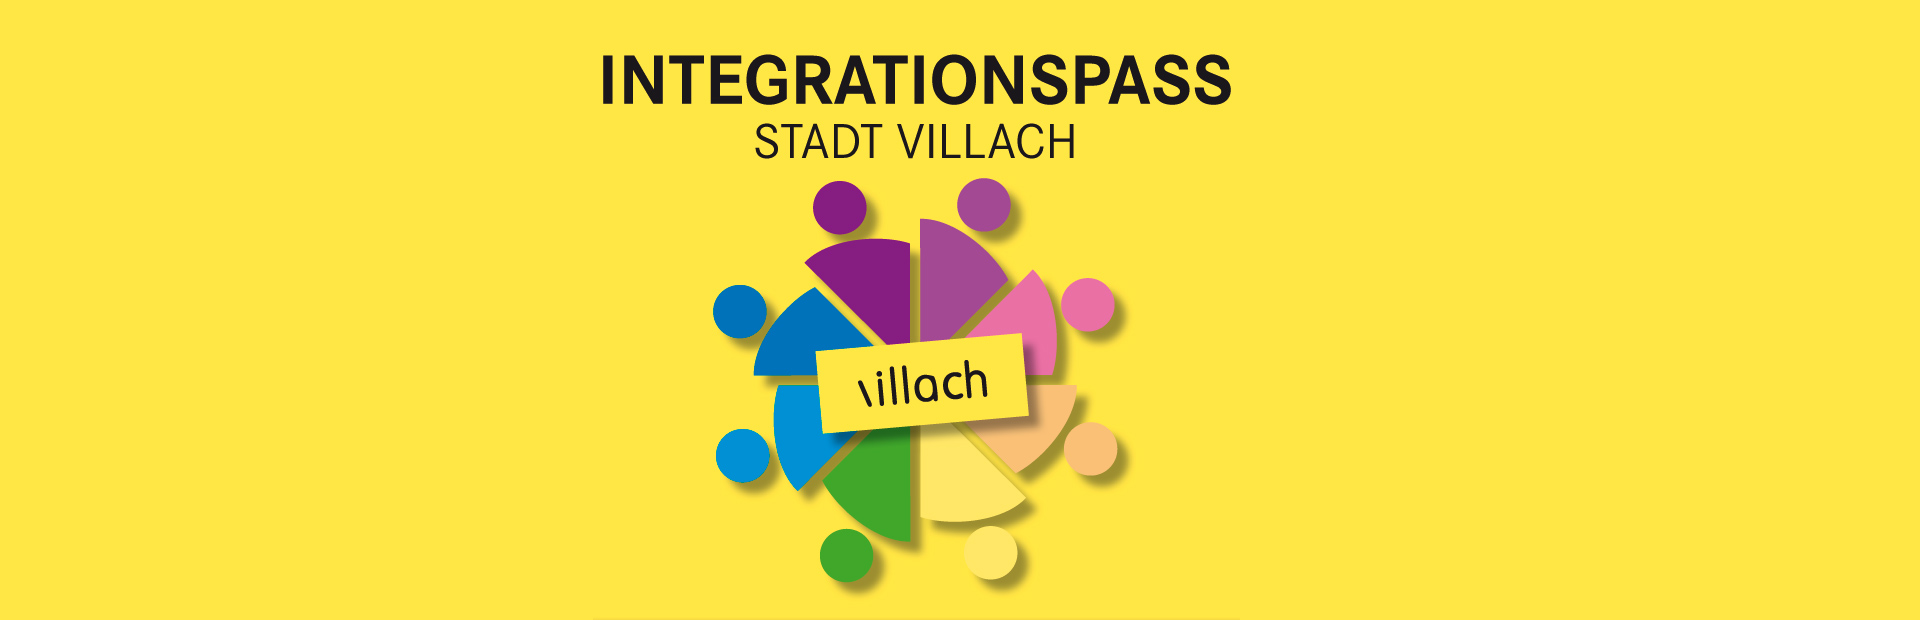 Das Logo des Integrationspass der Stadt Villach auf gelben Hintergrund